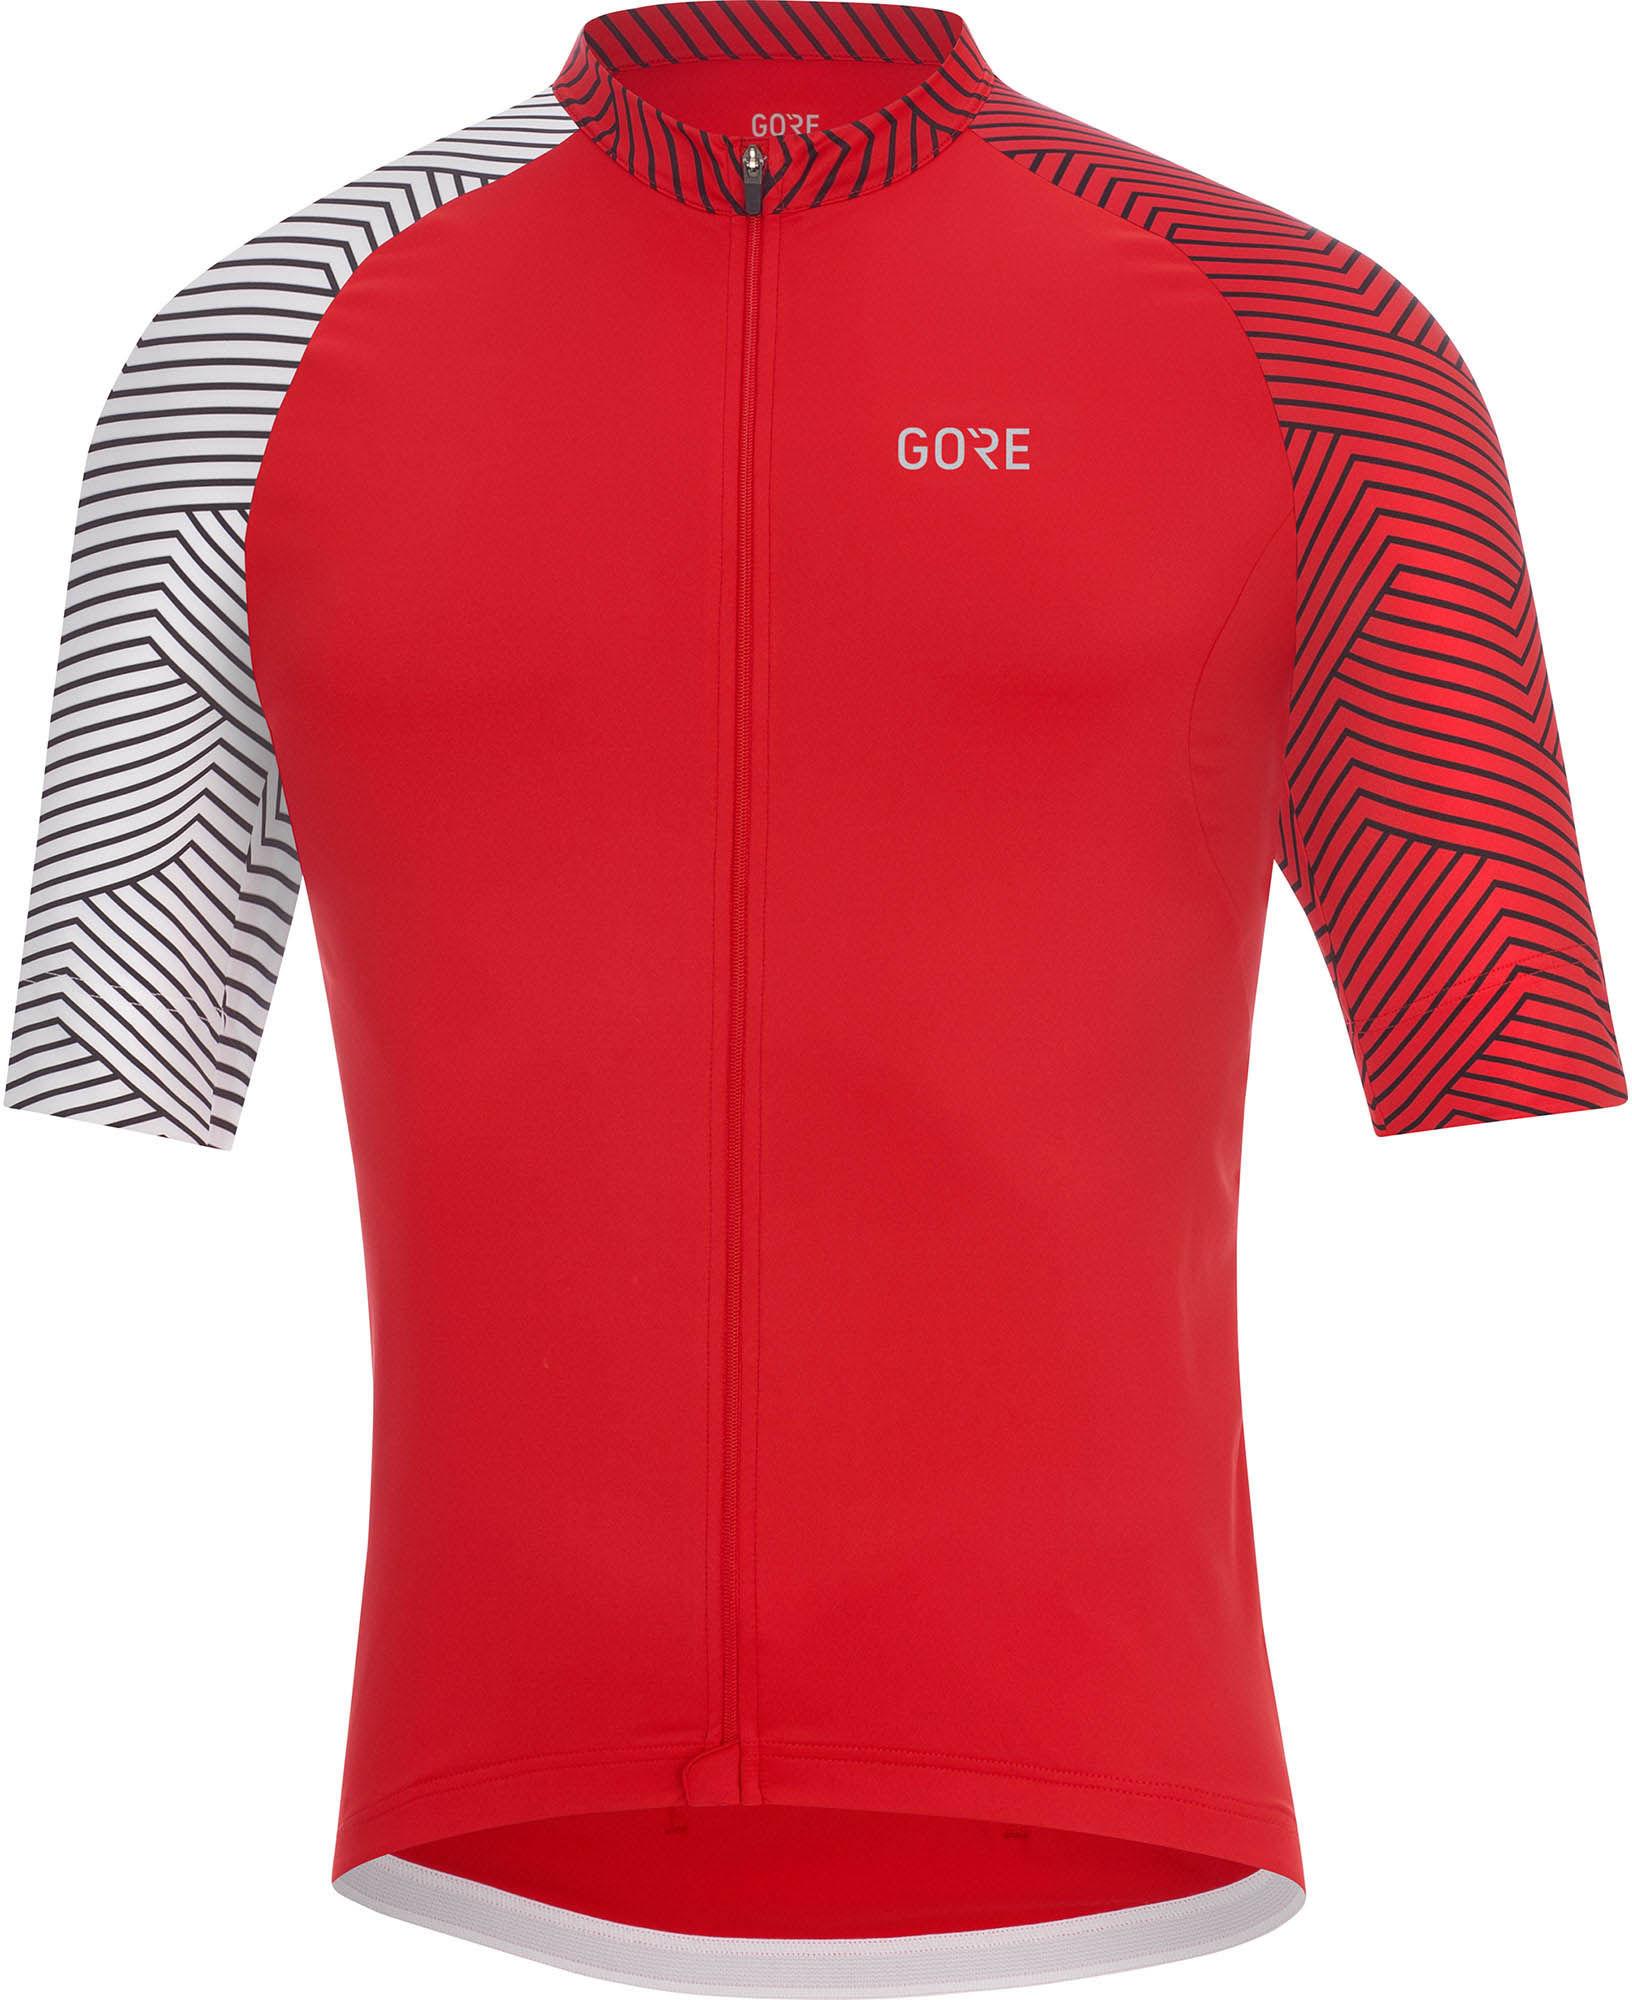 Gorewear C5 Jersey  Red/white